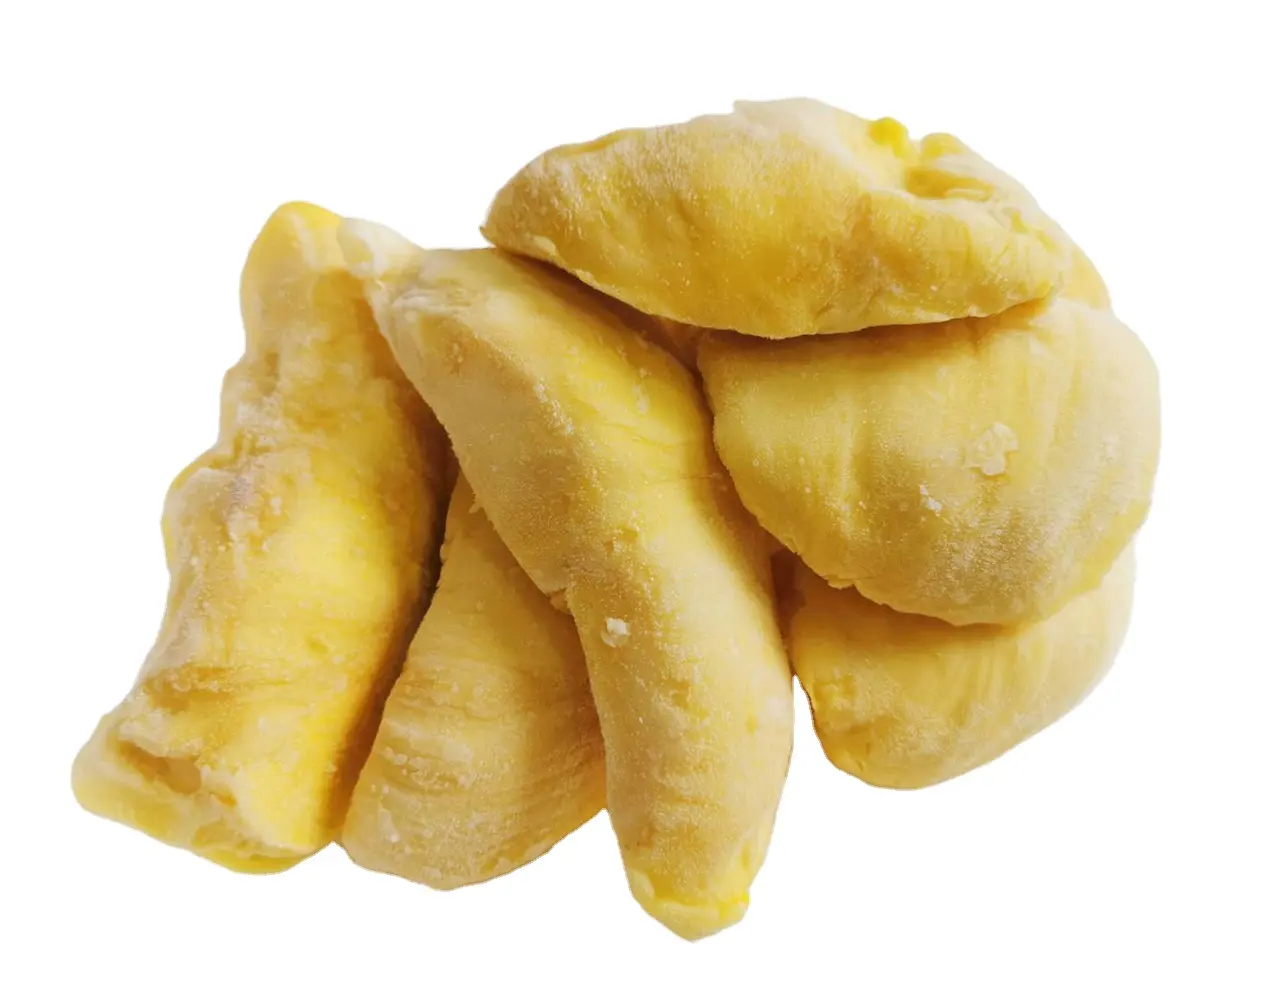 Bán buôn tốt nhất cung cấp giá cả cạnh tranh đông lạnh sầu riêng trái cây từ Việt Nam